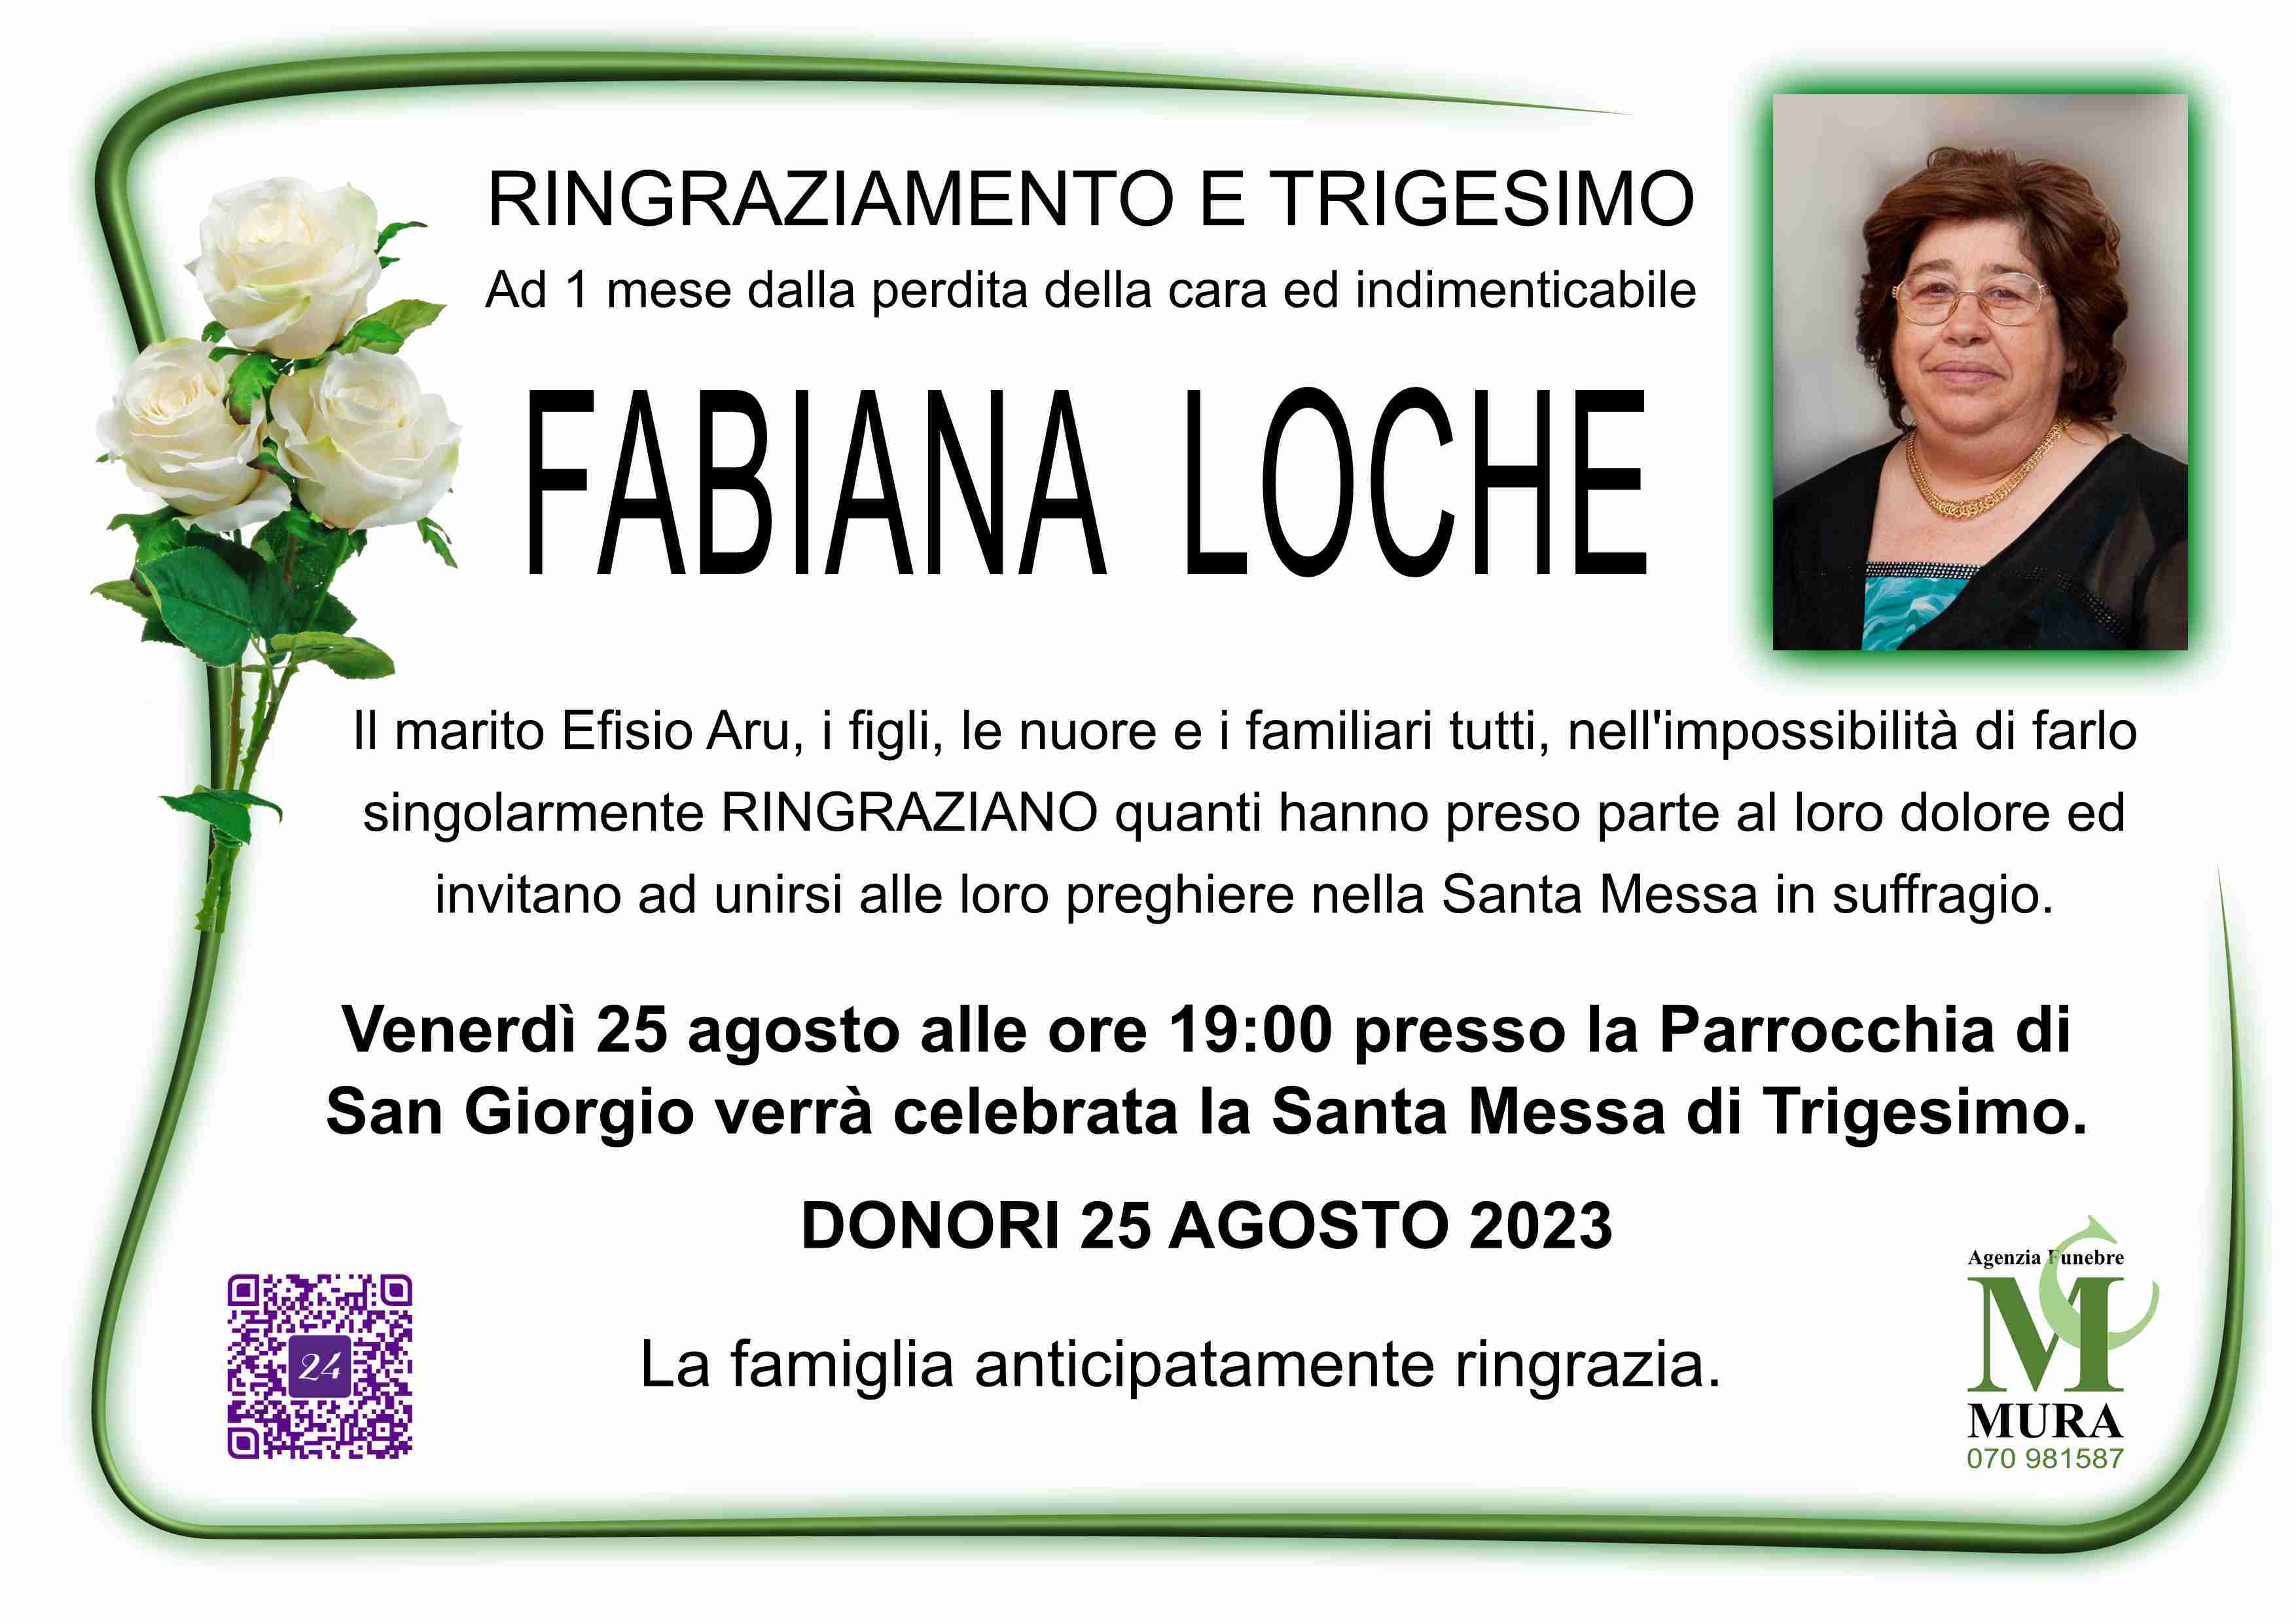 Fabiana Loche